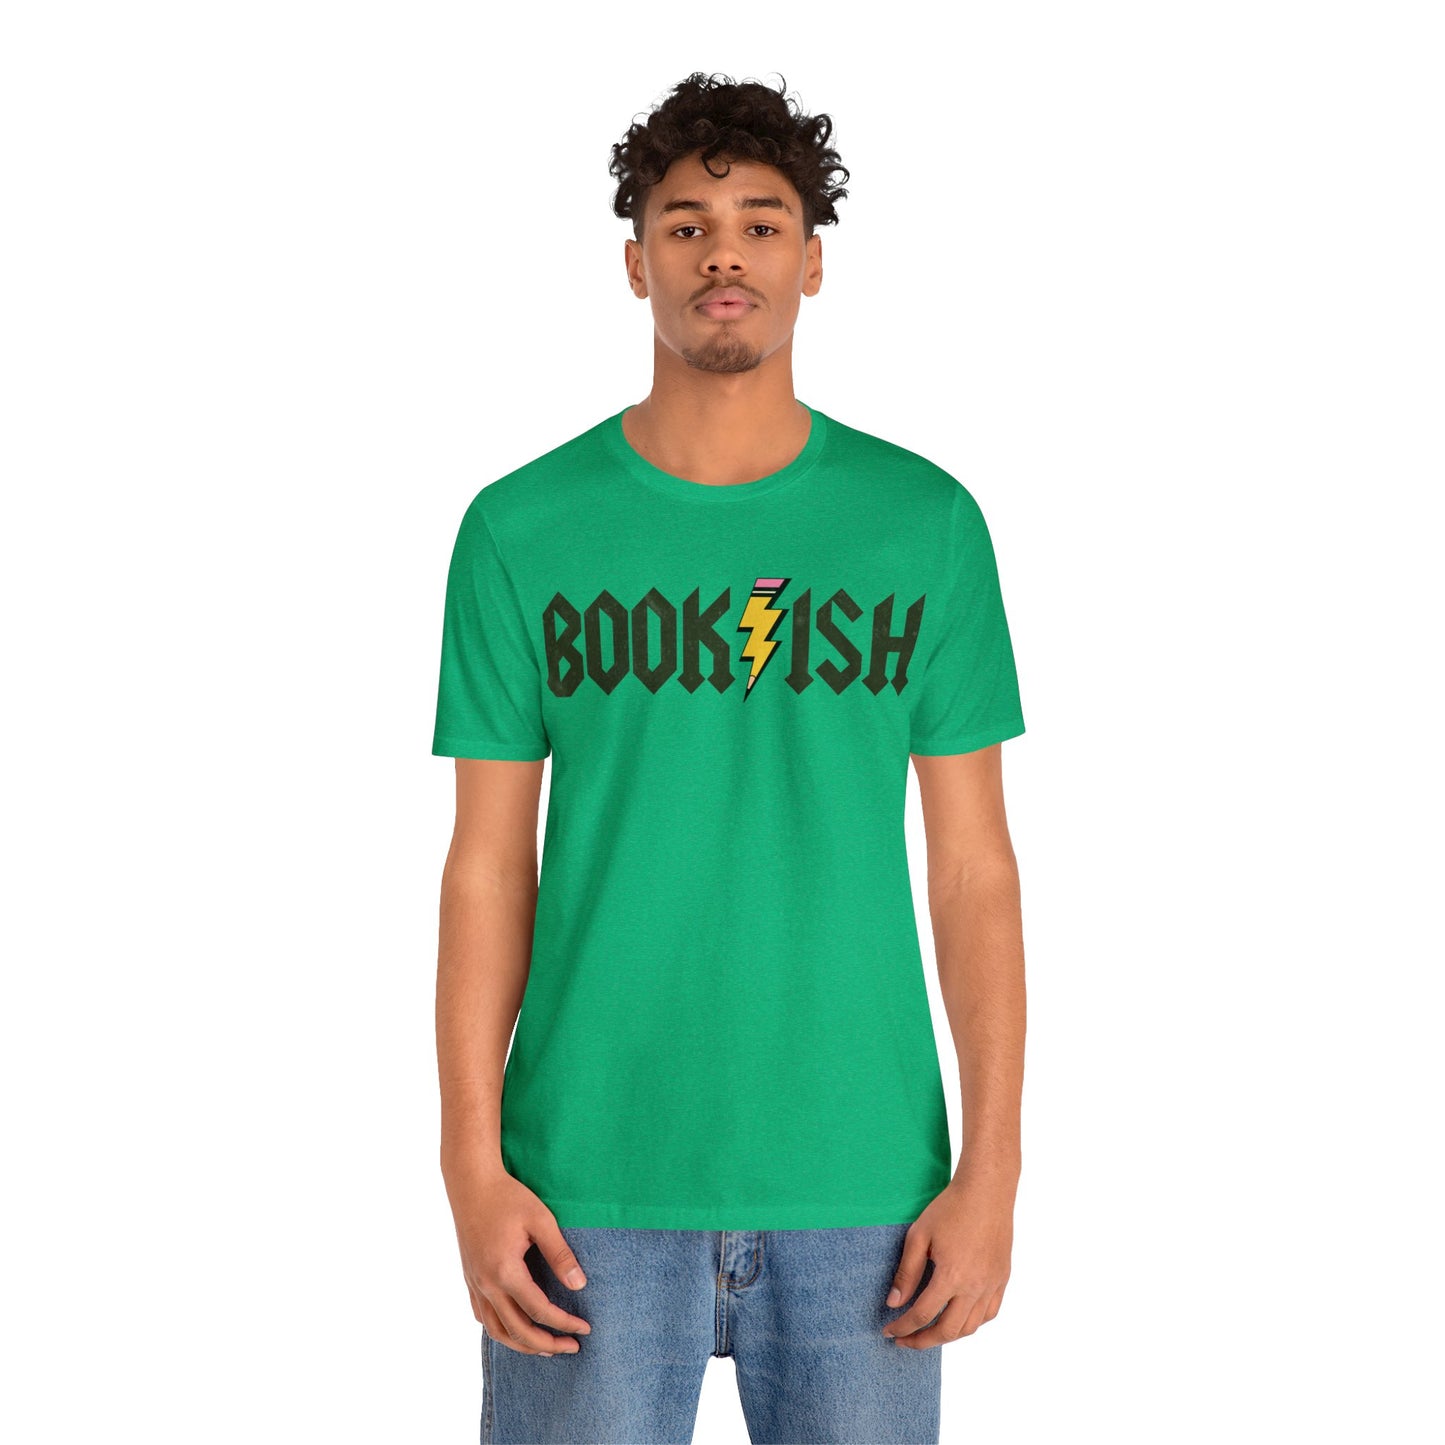 Bookish Shirt, Book Lovers Club Shirt, Bookworm Era Shirt, Librarian Shirt, Teacher Shirt, Book Nerd Shirt, Book Club Shirt, T1316